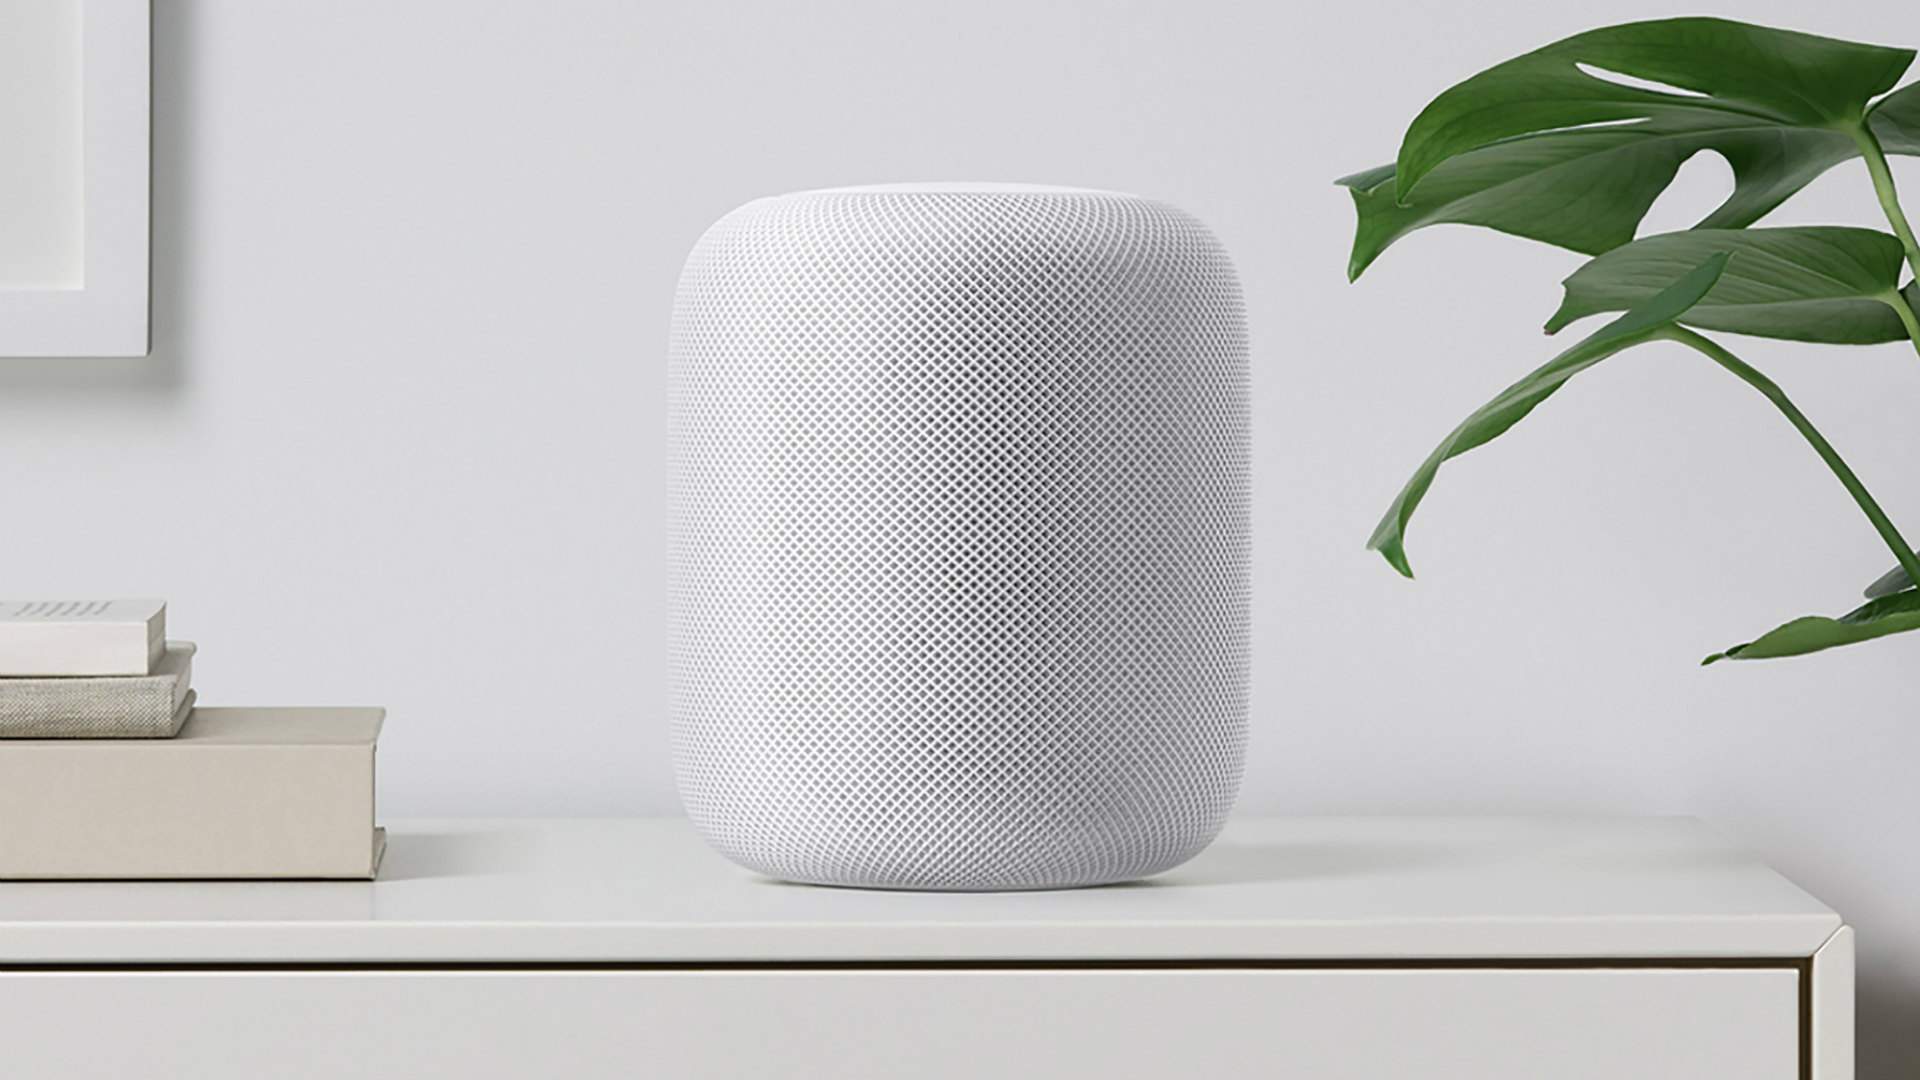 How Apple's New HomePod Smart Speaker Works